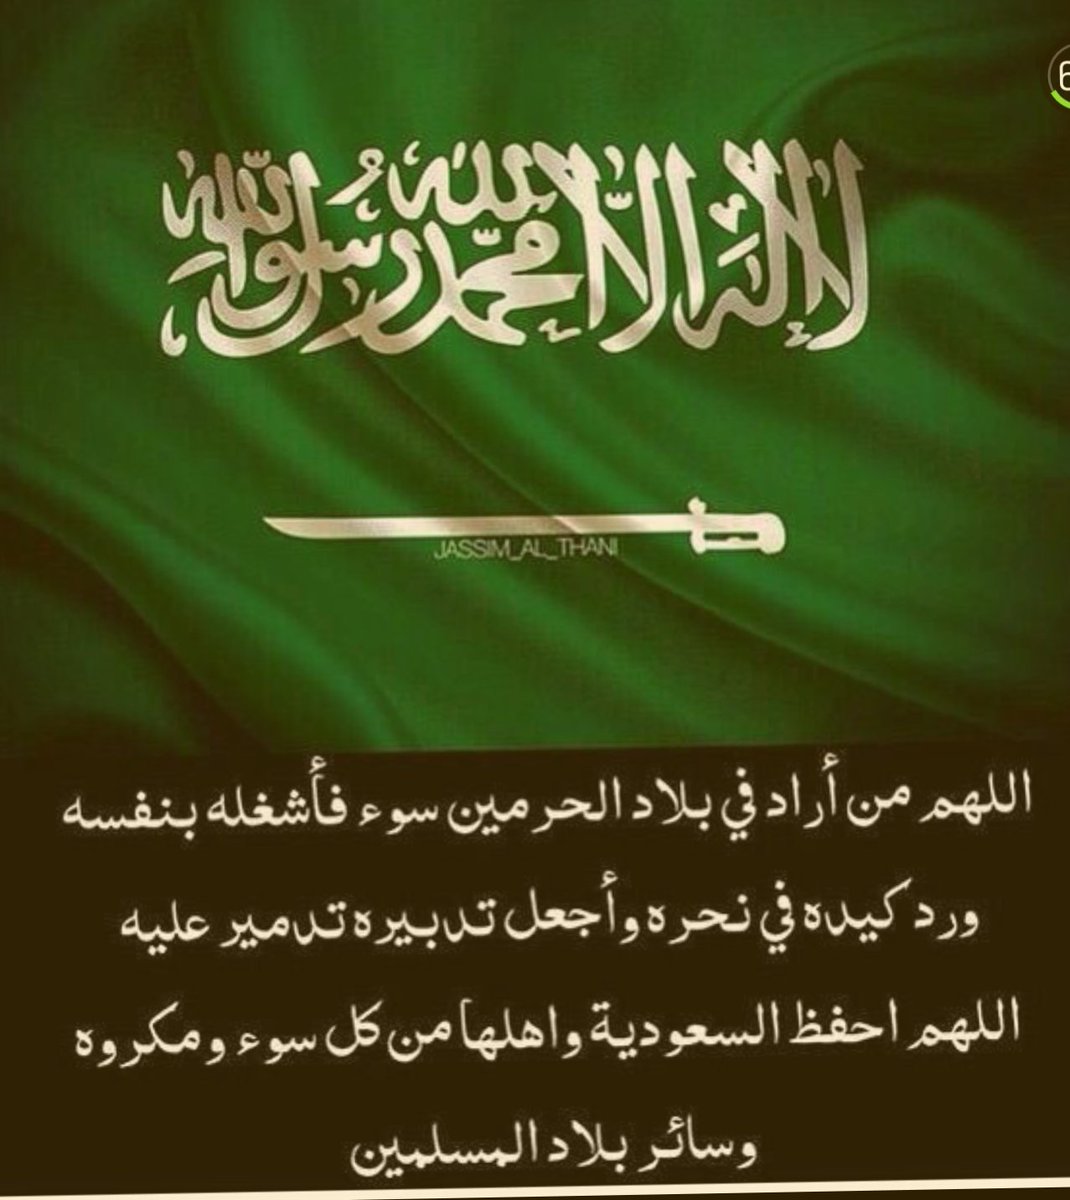 أدعية لحفظ المملكة العربية السعودية وأهلها بلد الحرمين الشرفين من الأذى والمرض